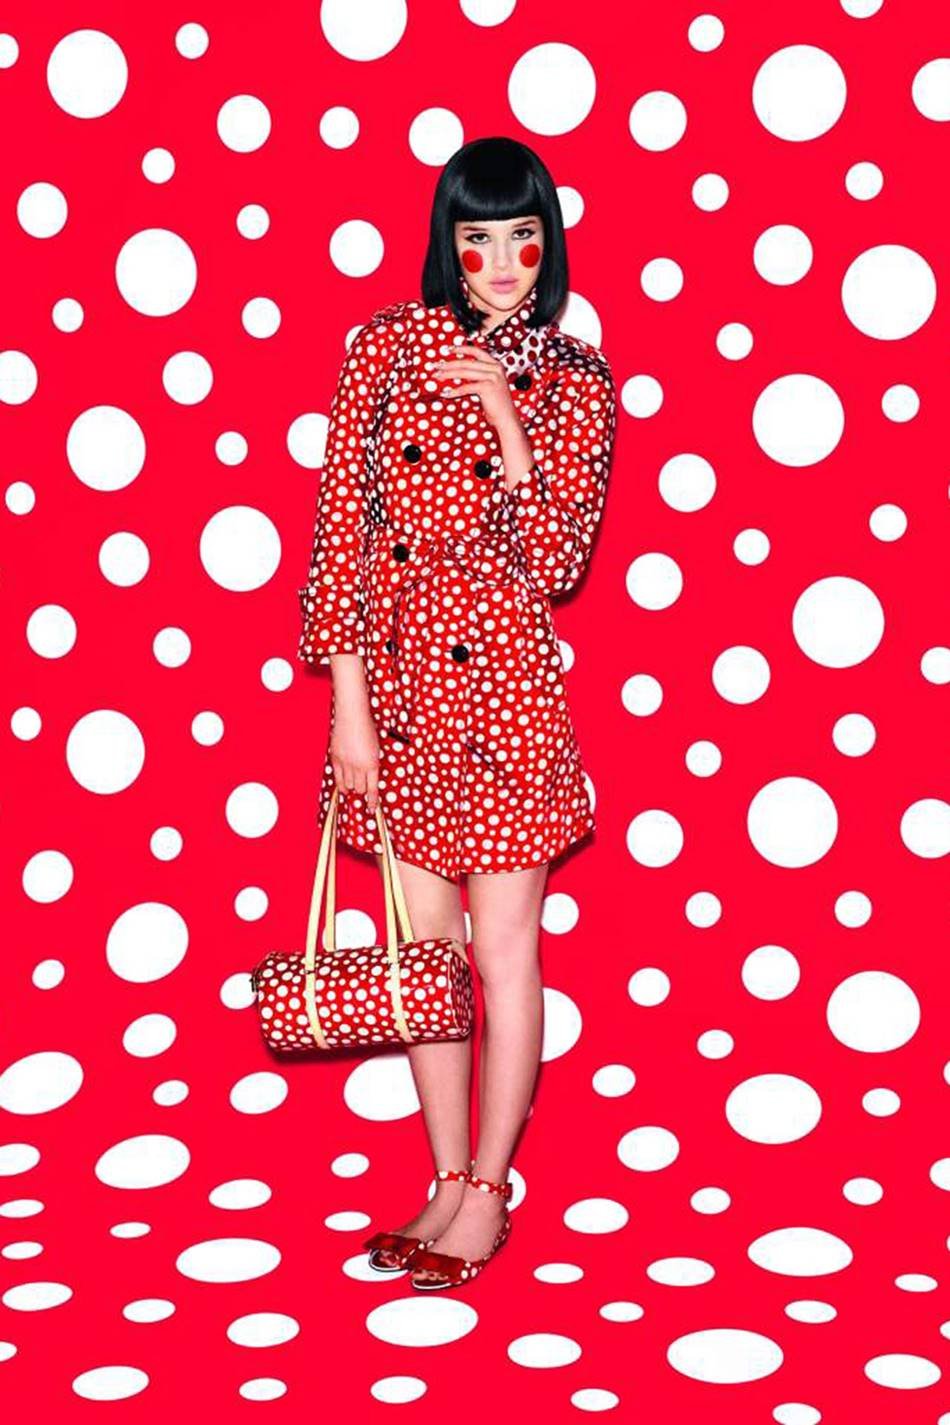 Foto de campanha publicitária da marca Louis Vuitton. A coleção de roupas e acessórios foi feita em parceria com a artista Yayoi Kusama. A modelo, branca e jovem, de cabelo curto chanel preto, usa um vestido vermelho com bolas brancas e uma bolsa de couro c om a mesma estampa. - Metrópoles